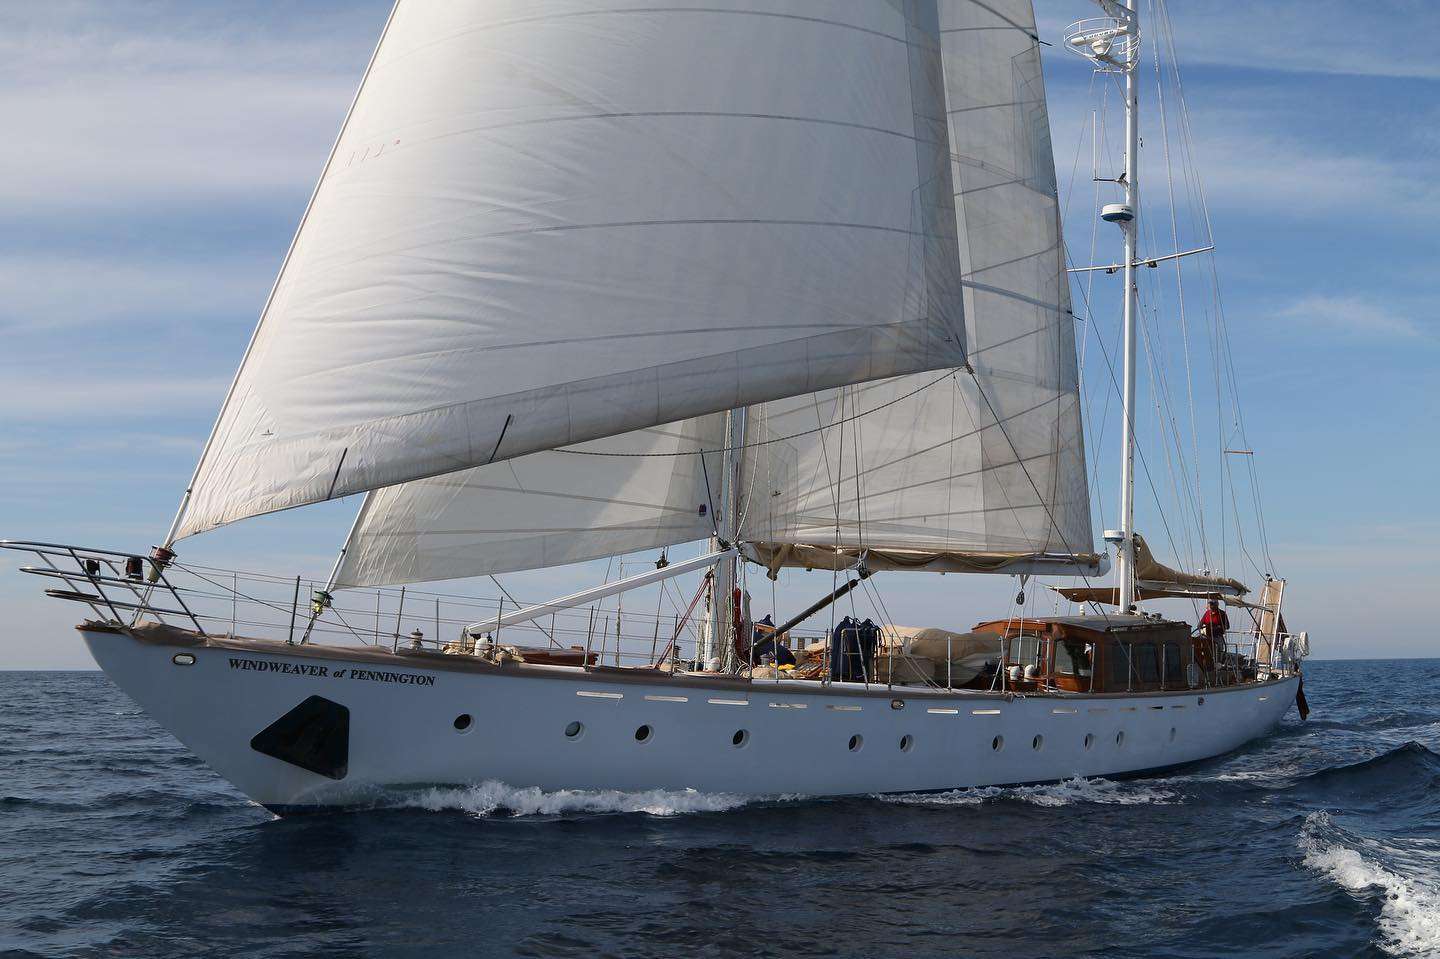 WINDWEAVER OF PENNINGTON - Yacht Charter Zakynthos & Boat hire in Greece 1